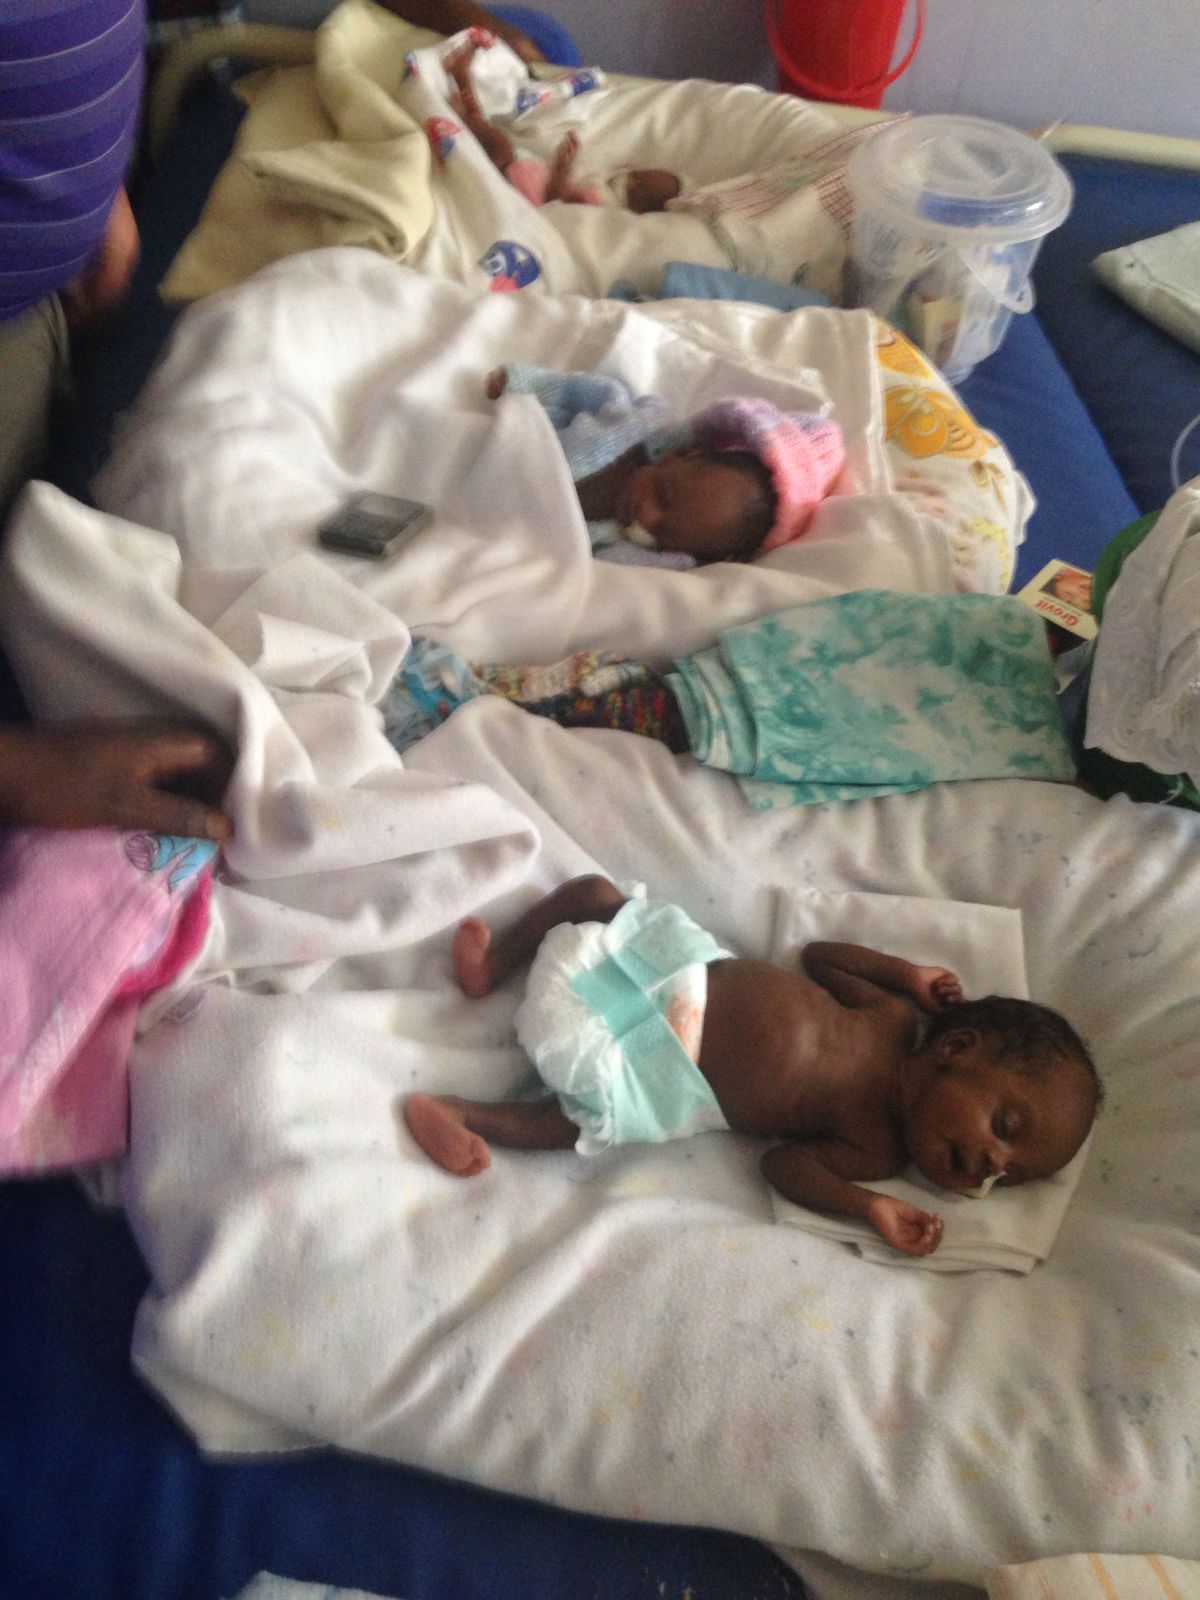 Update on Kachumbala Maternity Unit